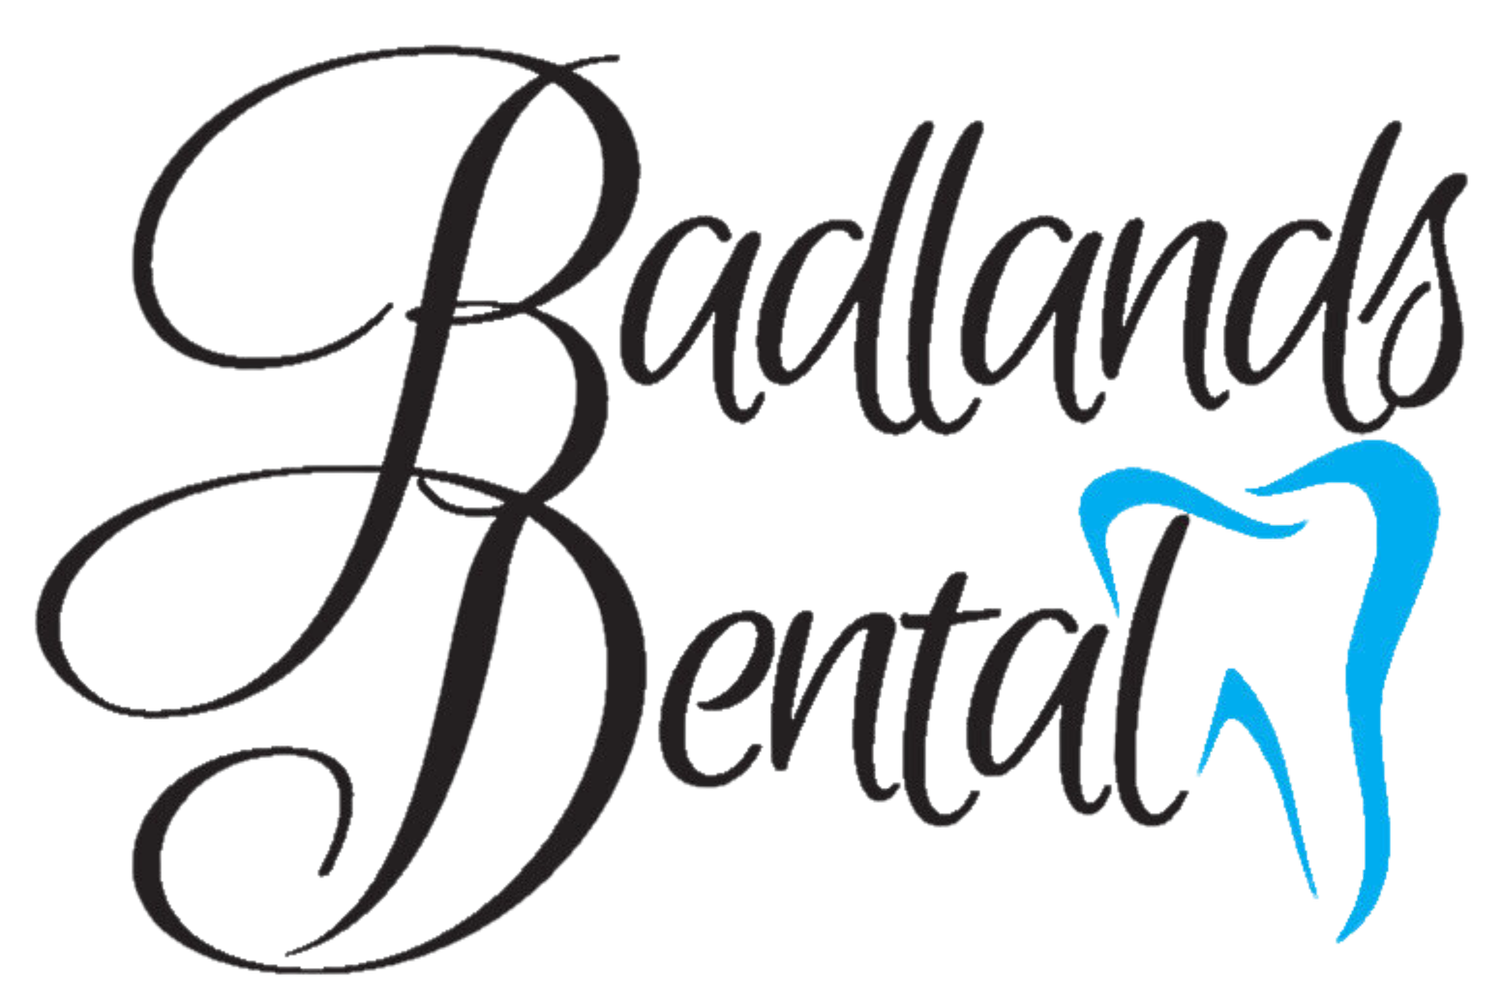 Badlands Dental